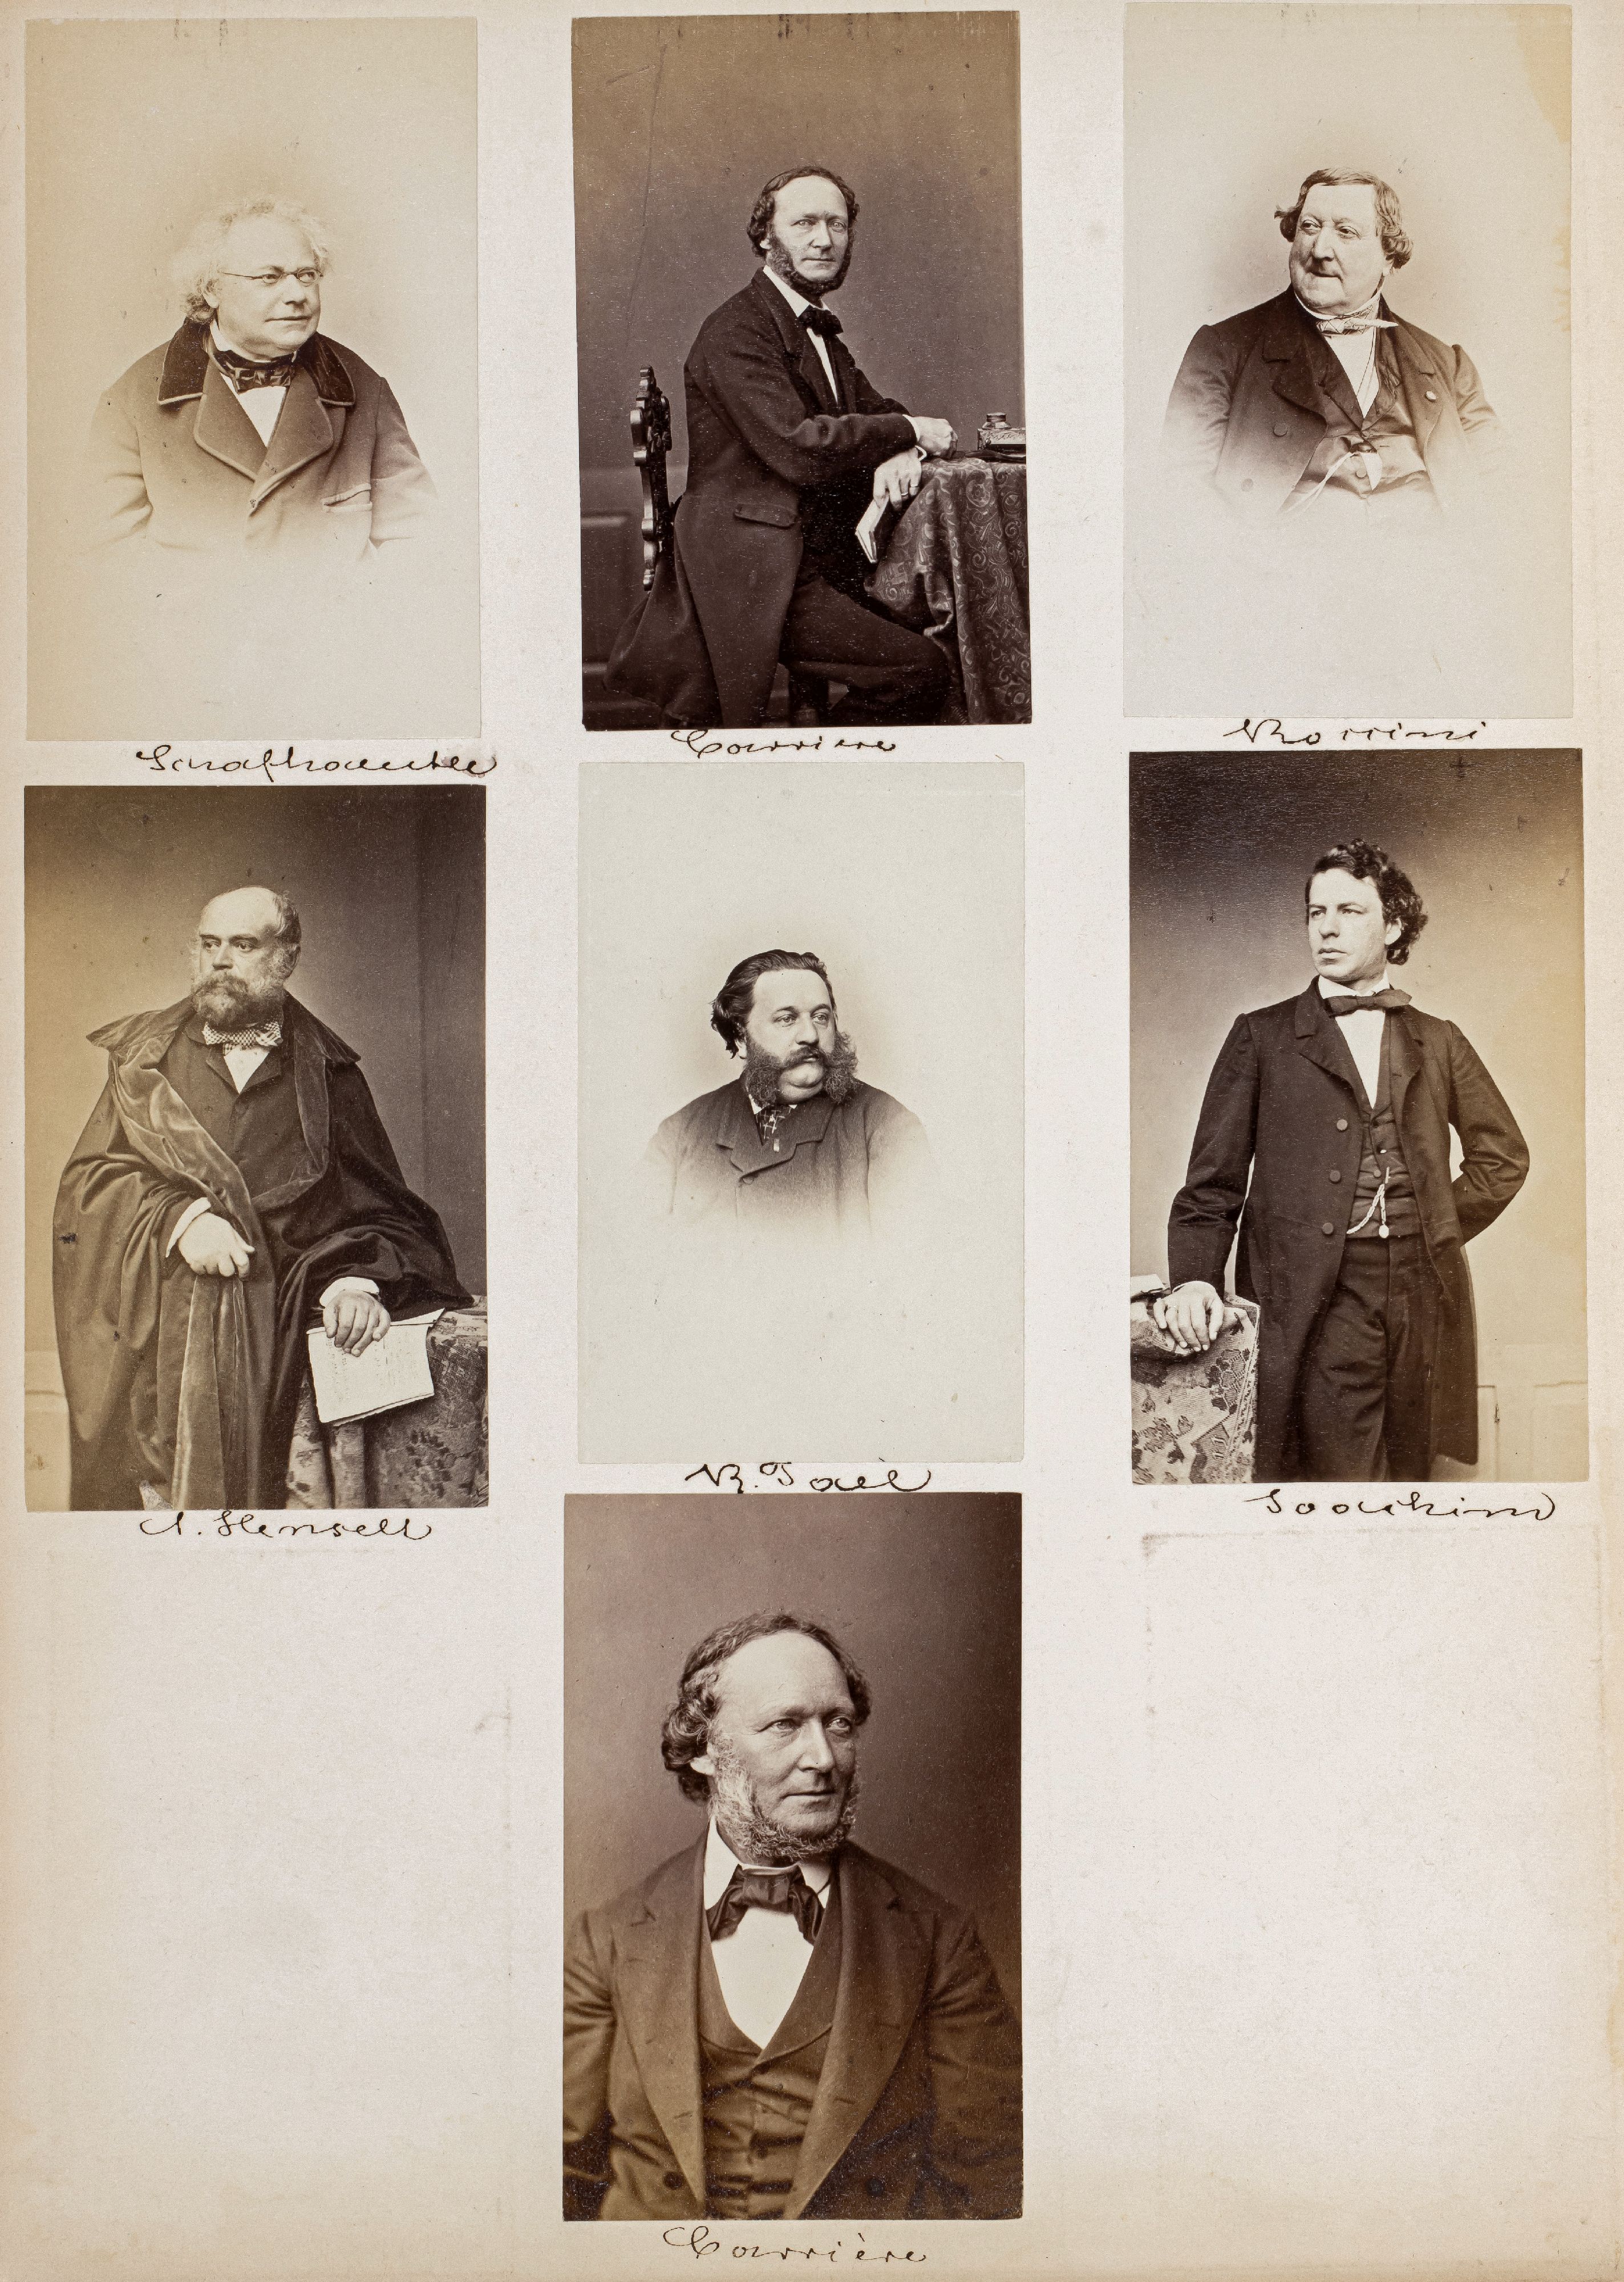 FOTOGRAFIE | Hanfstaengl, Franz | 1807 Baiernrain bei Tölz - 1877 München - Image 21 of 25